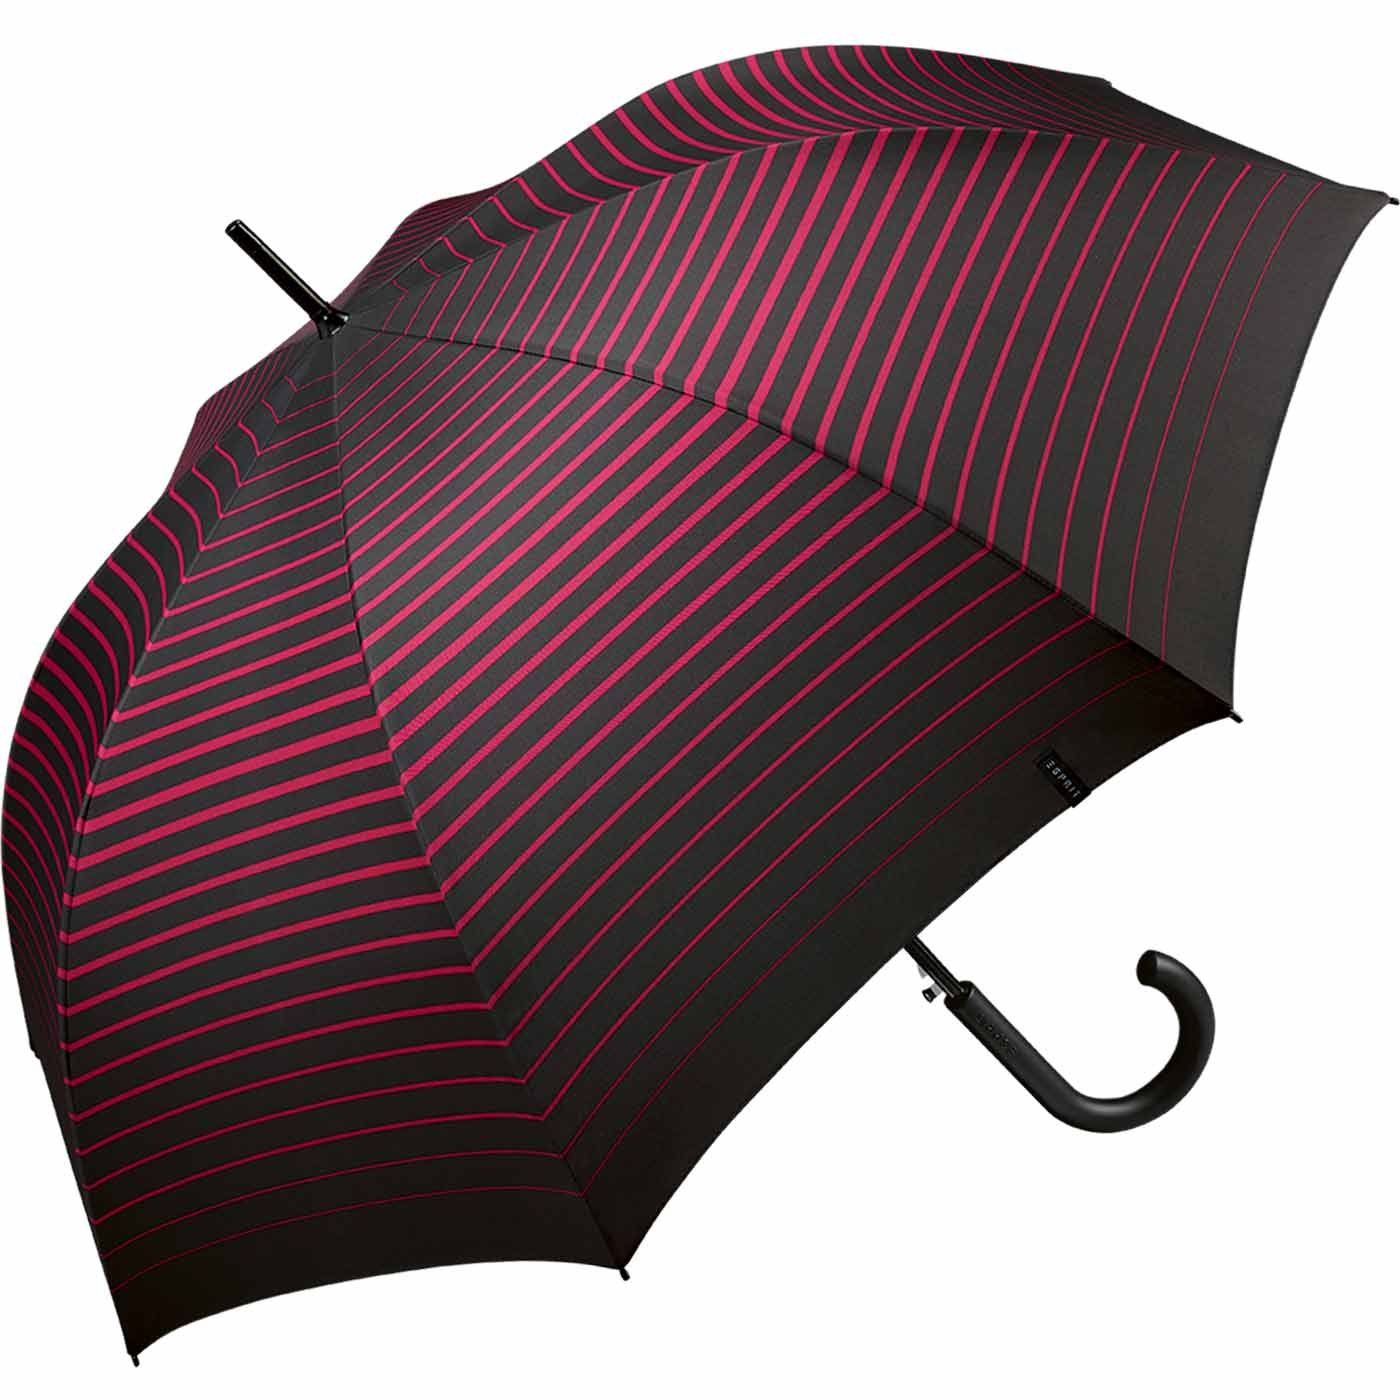 Esprit Langregenschirm - schwarz-pink Damen Streifen-Optik - Auf-Automatik in groß, moderner mit pink, vivacious Stripe stabil, Degradee